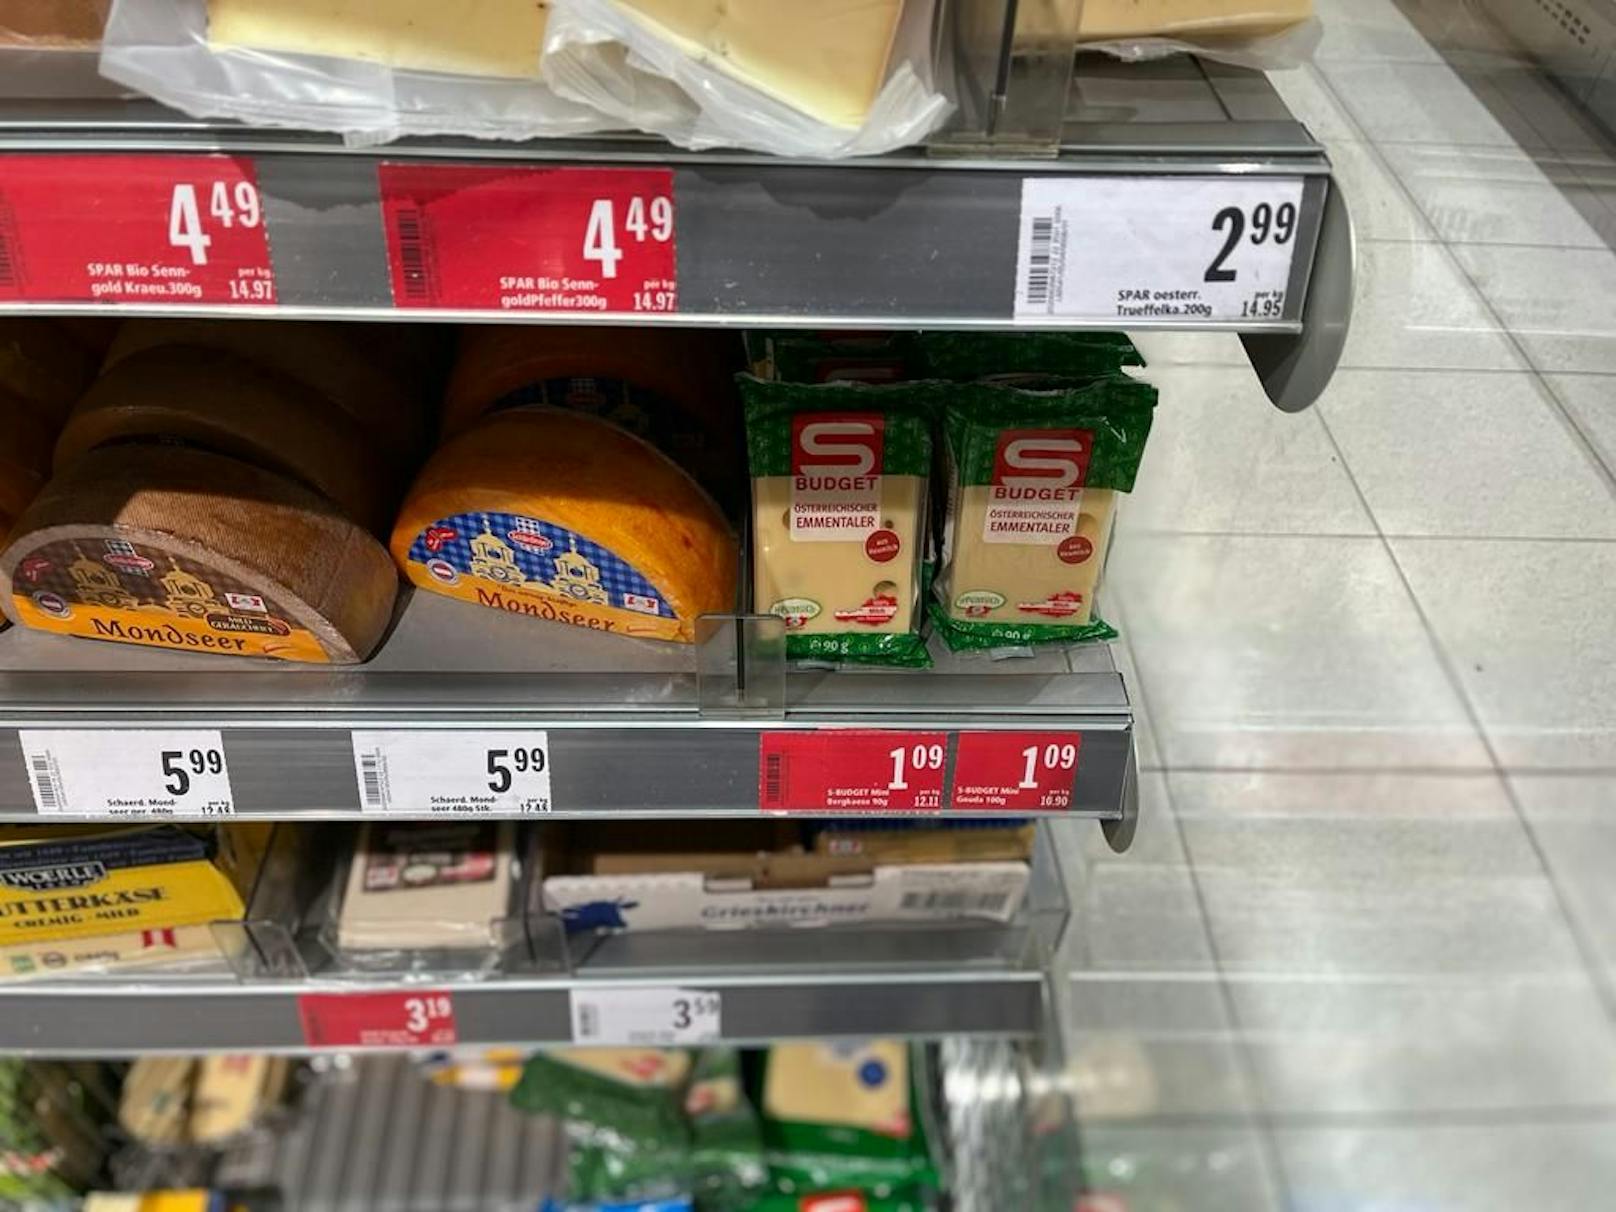 Kleiner Käse, größerer Preis: Von unter 1 Euro auf 1,09 Euro. Die rot markierten Preisschilder sind Teil des "Immer-billig-Programmes".